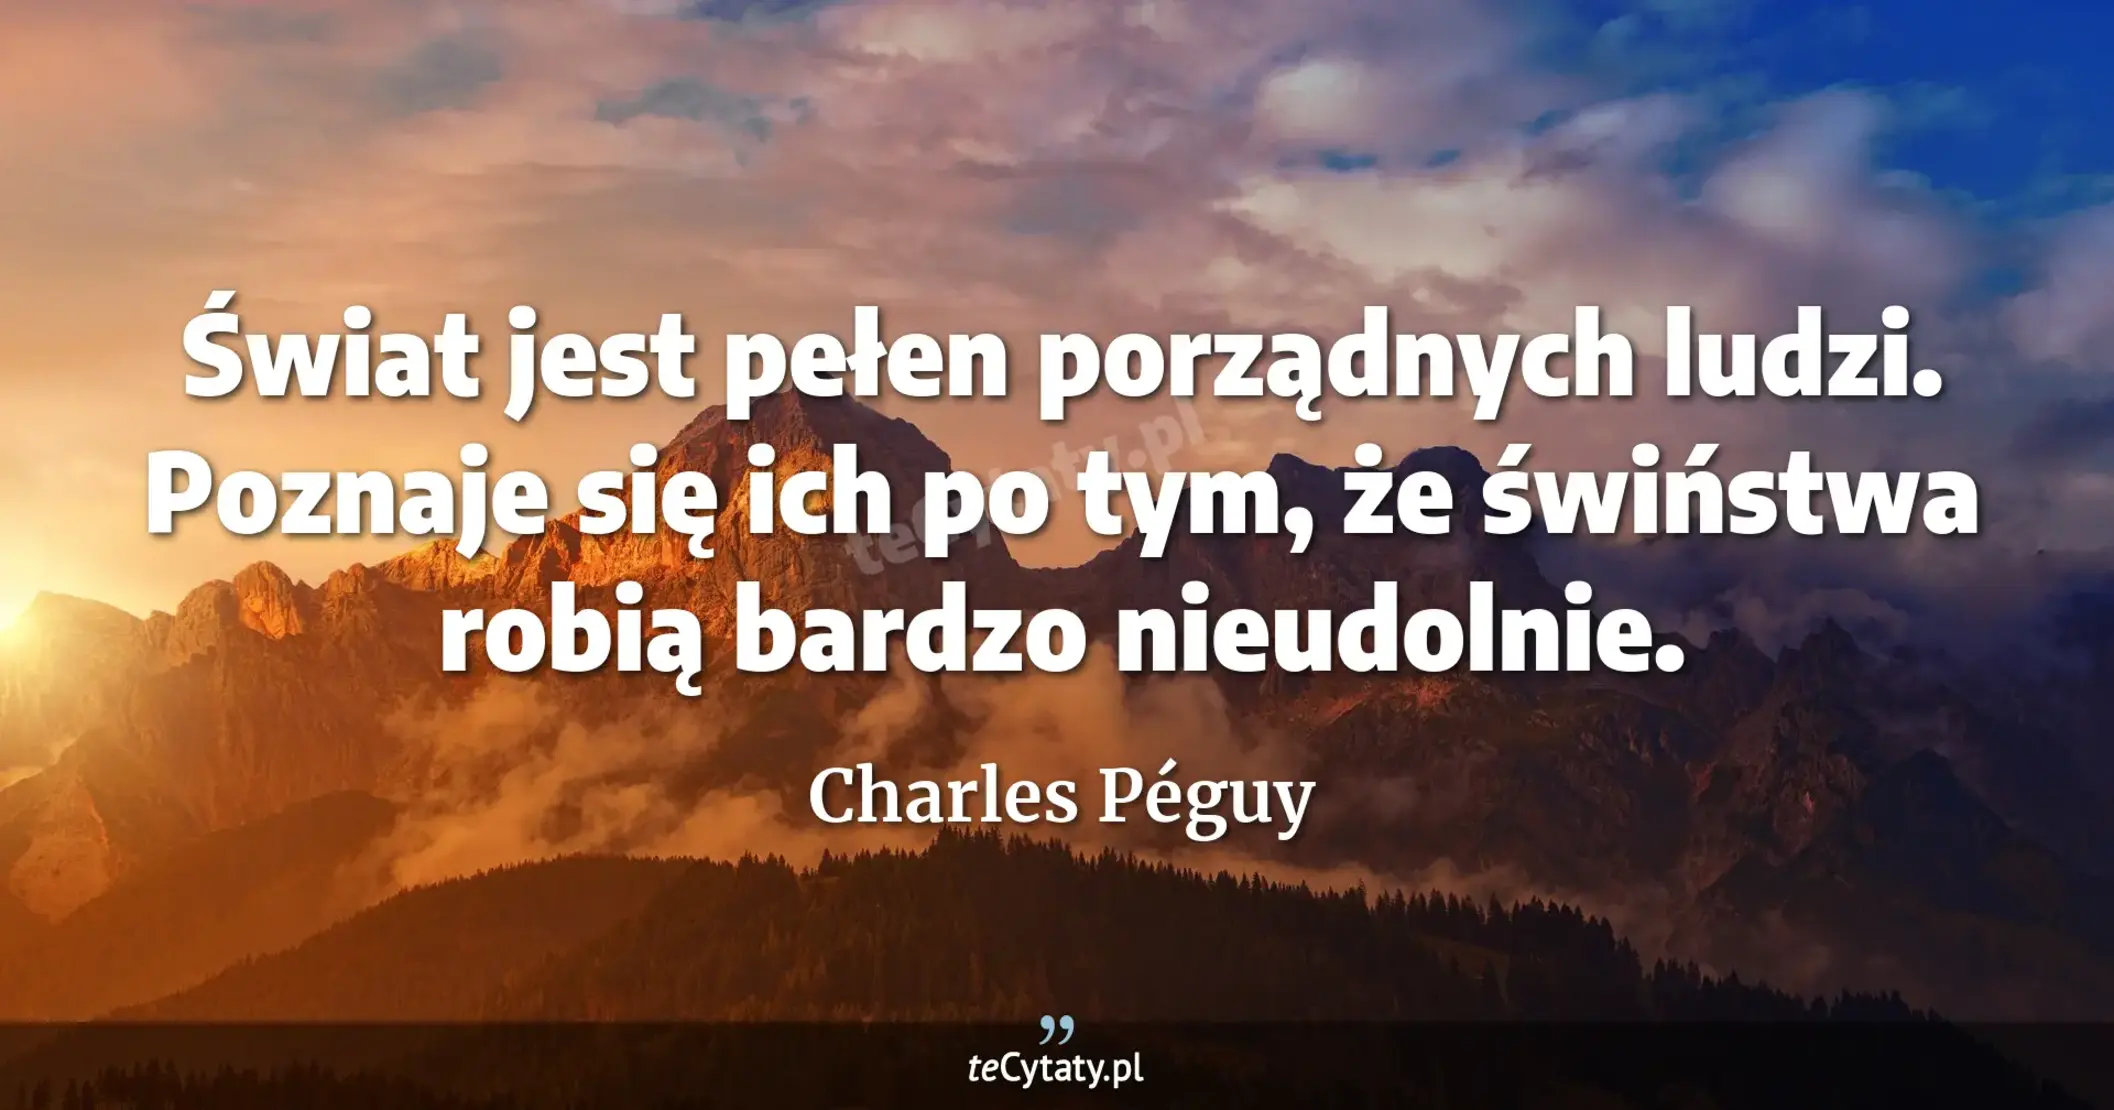 Świat jest pełen porządnych ludzi. Poznaje się ich po tym, że świństwa robią bardzo nieudolnie. - Charles Péguy